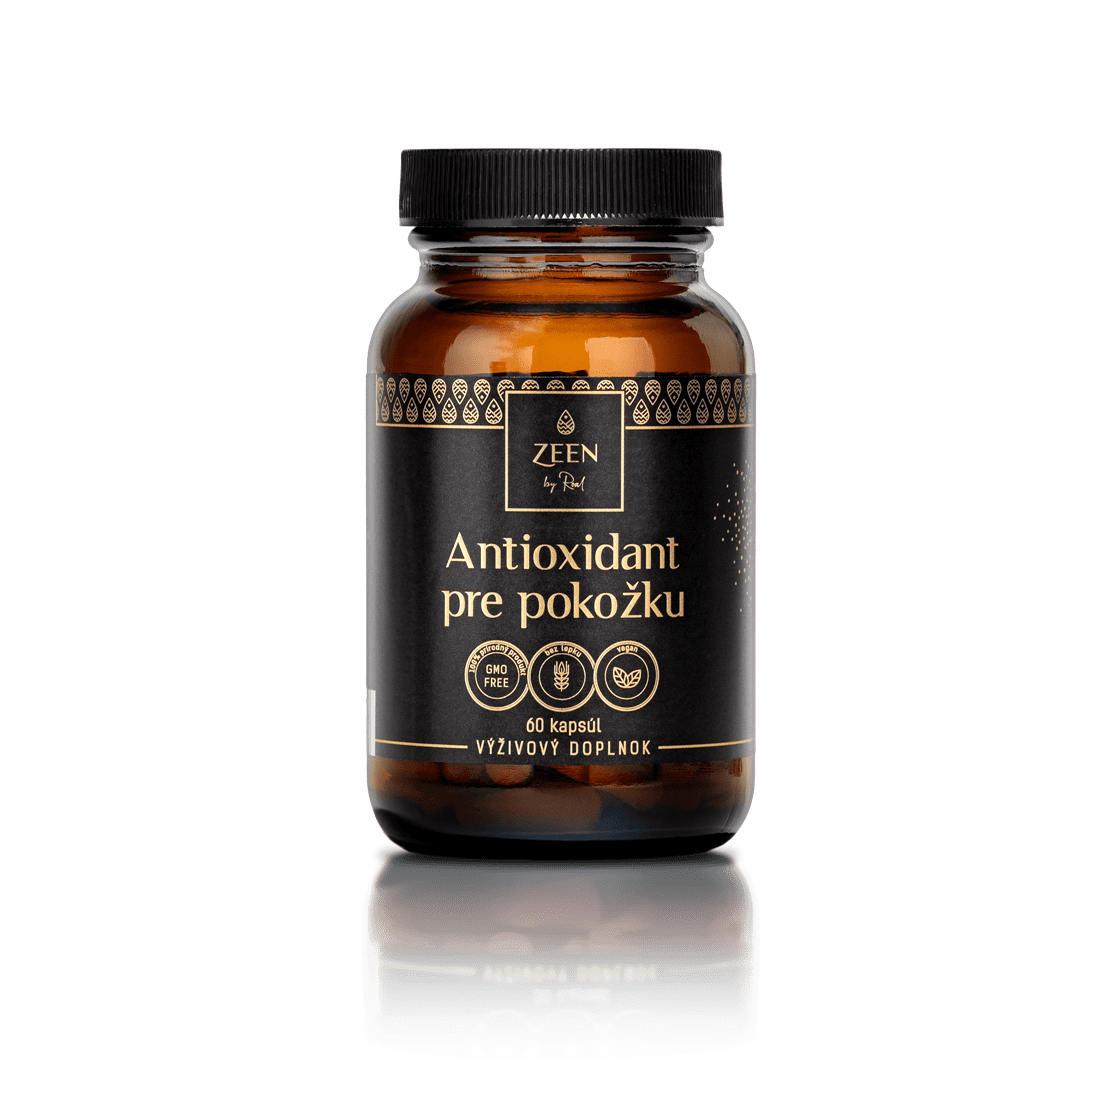 E-shop Antioxidant pre pokožku, Kapsuly 60 ks 1 + 1 ZADARMO